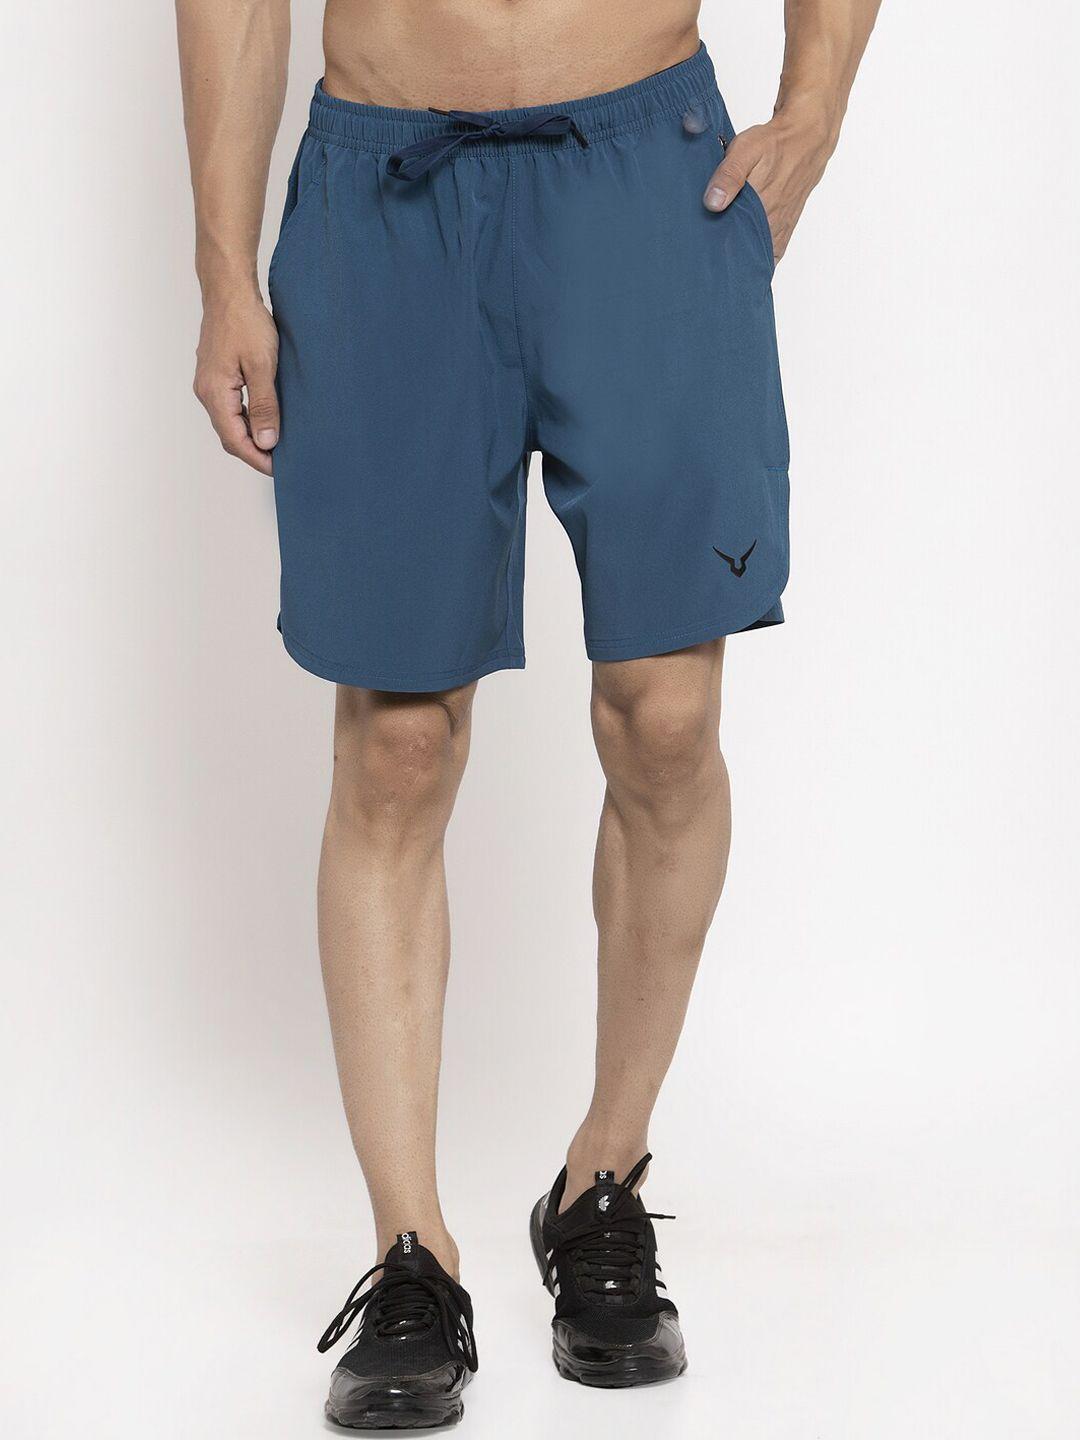 invincible-men-teal-solid-regular-fit-sports-shorts